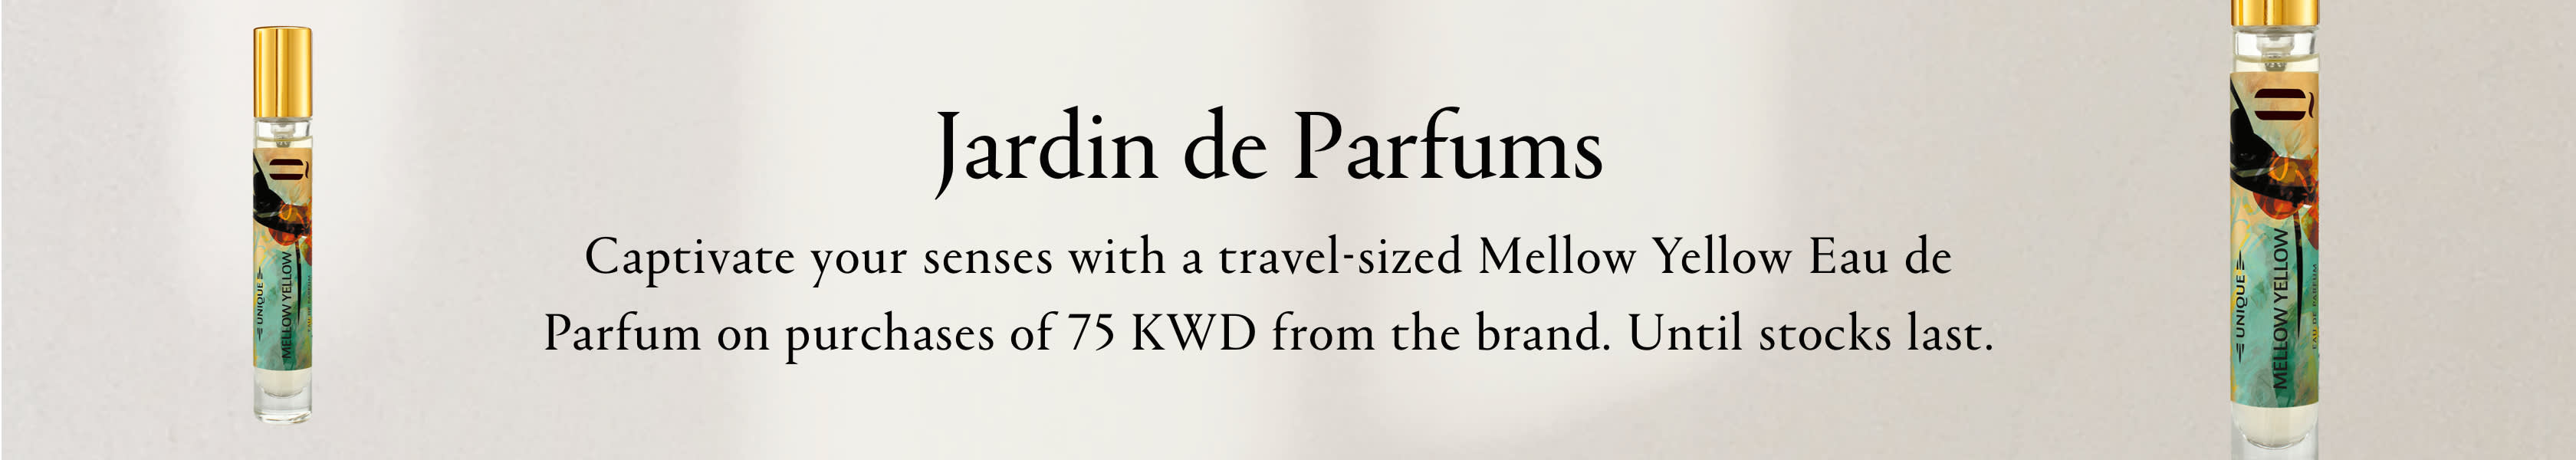 Jardin de Parfums GWP PDP+PLP Web EN KWD WK9